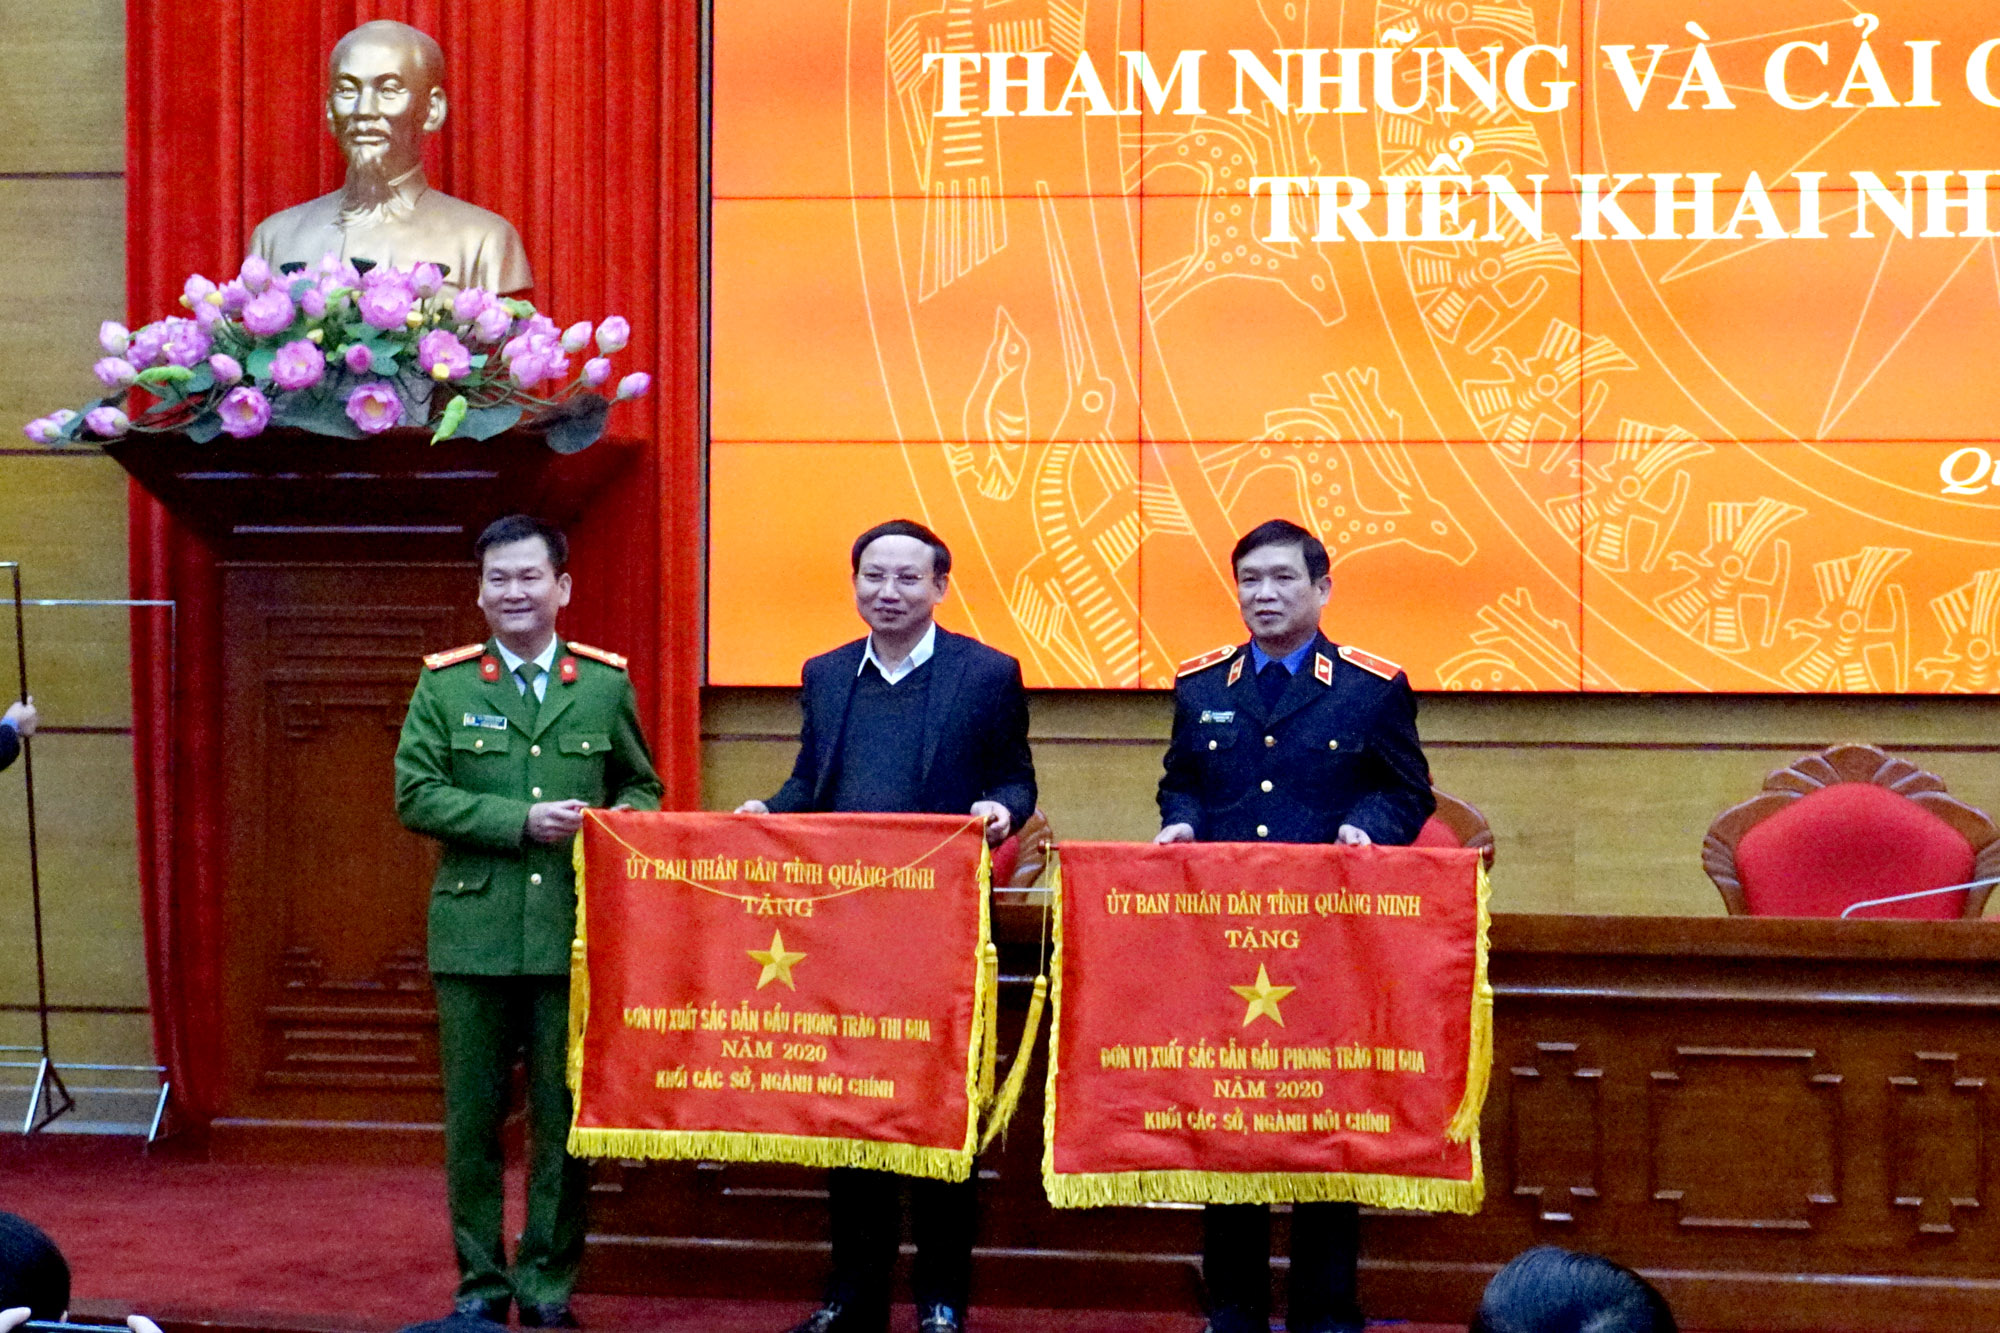 Đồng chí Nguyễn Xuân Ký, Bí thư Tỉnh ủy, Chủ tịch HĐND tỉnh trao cờ thi đua cho 2 tập thể có thành tích xuất sắc